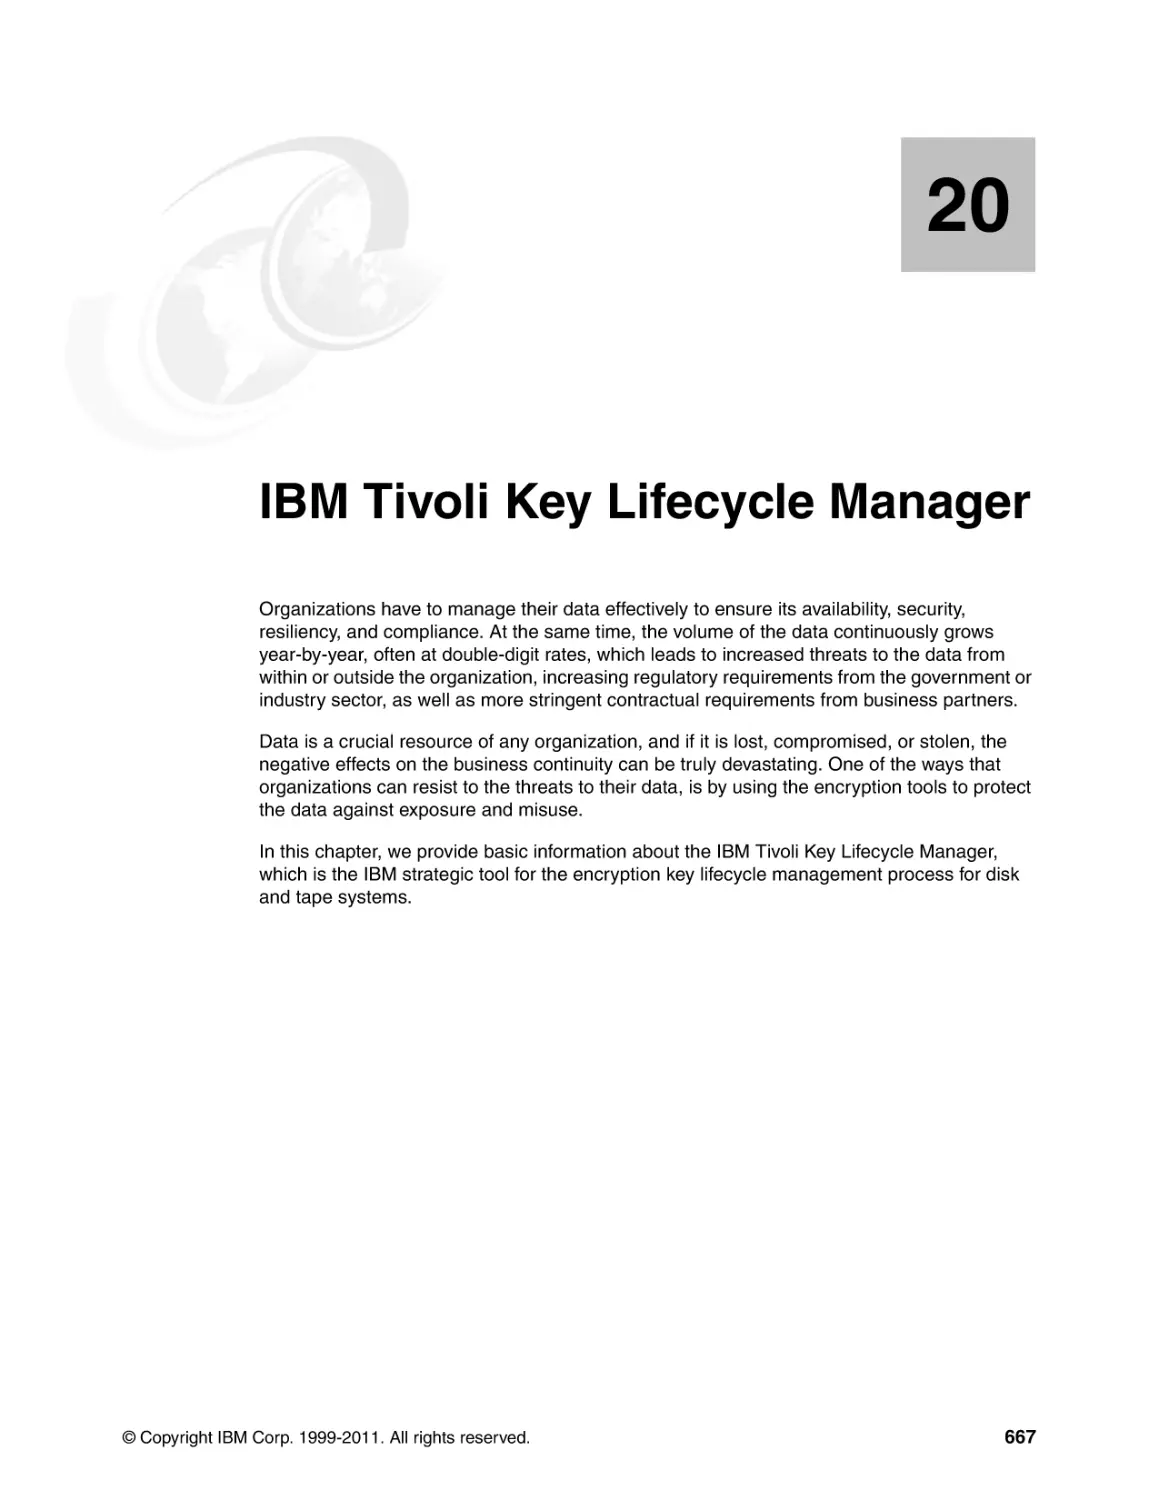 Chapter 20. IBM Tivoli Key Lifecycle Manager